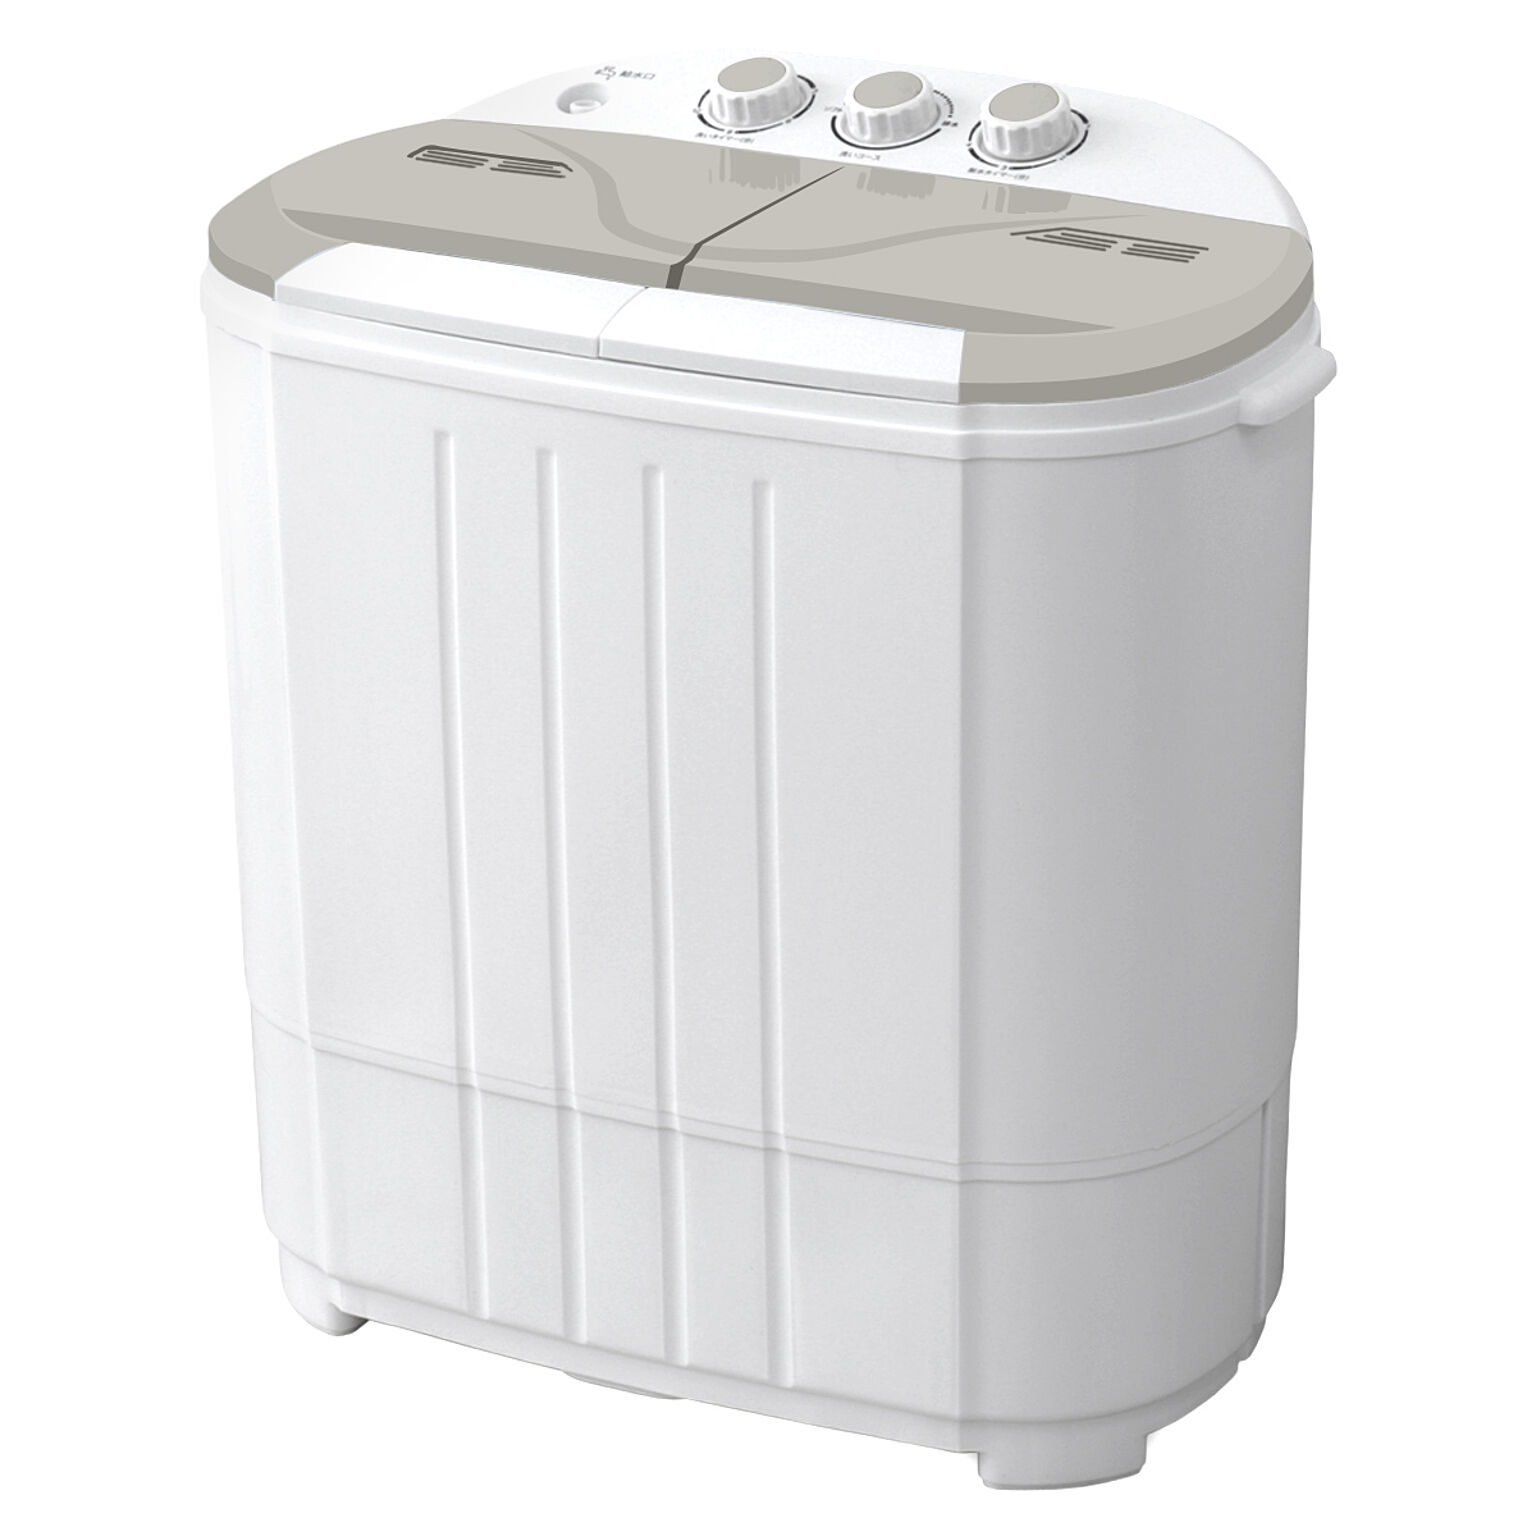 小型洗濯機 ミニ洗濯機 二層式洗濯機【1年保証】